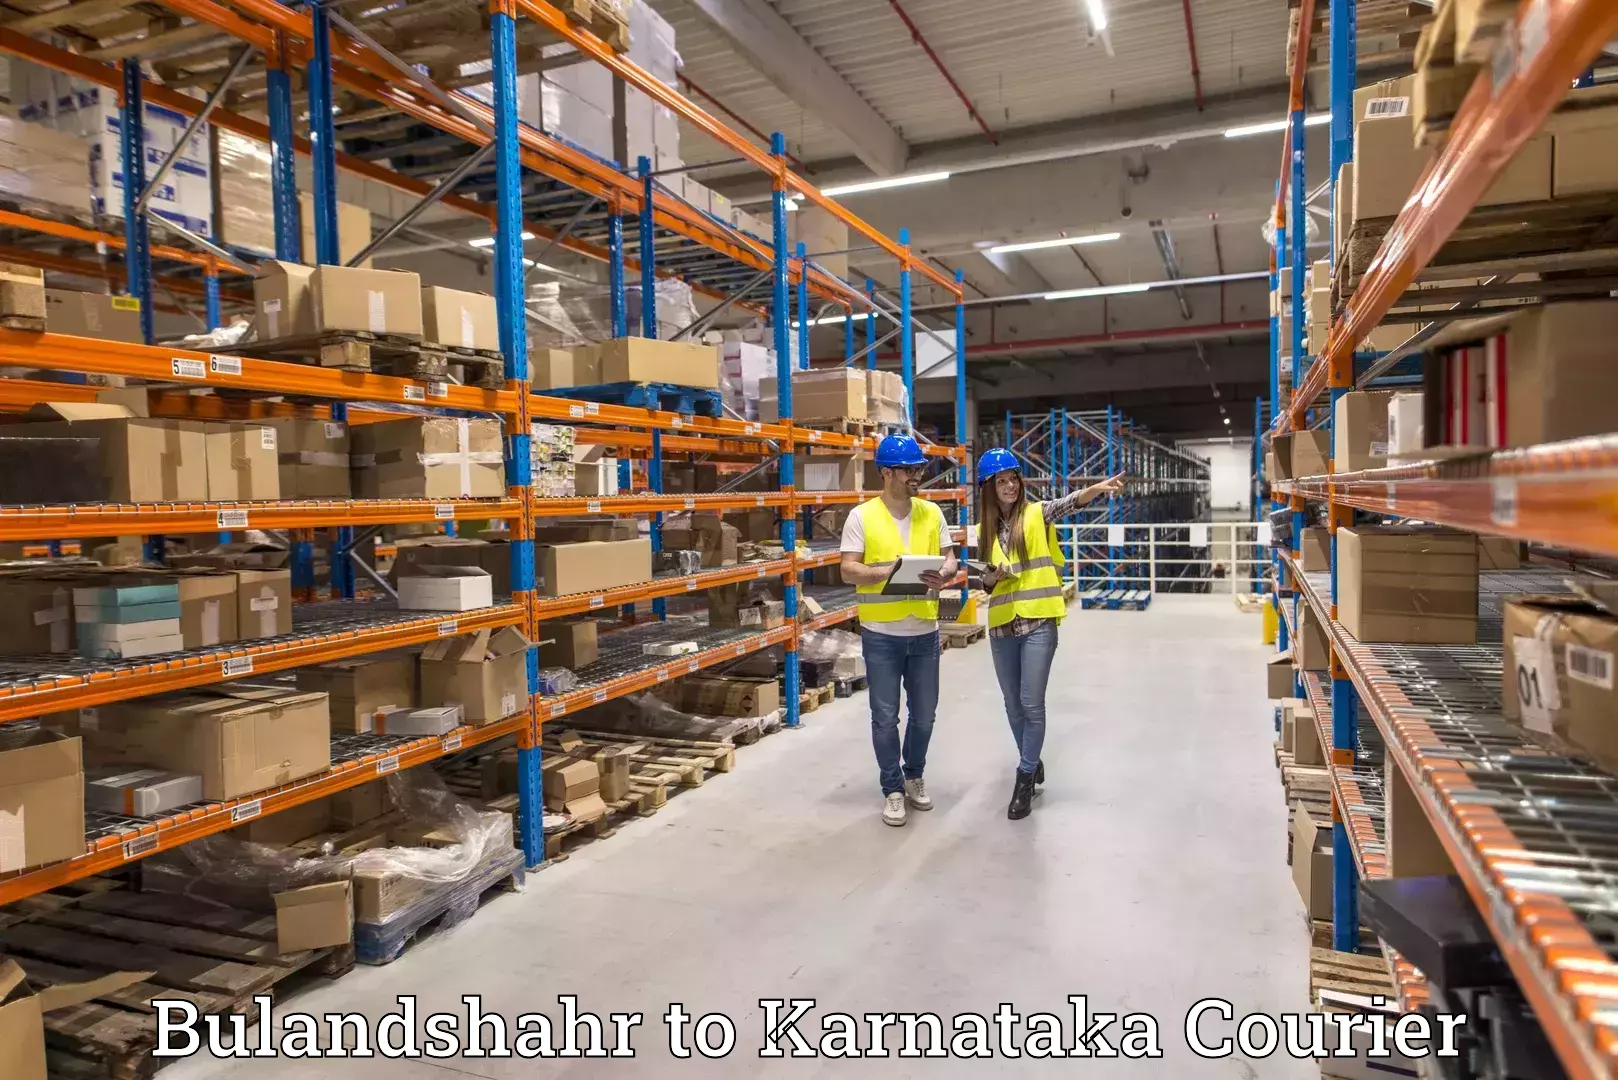 High-capacity parcel service Bulandshahr to Honnavar